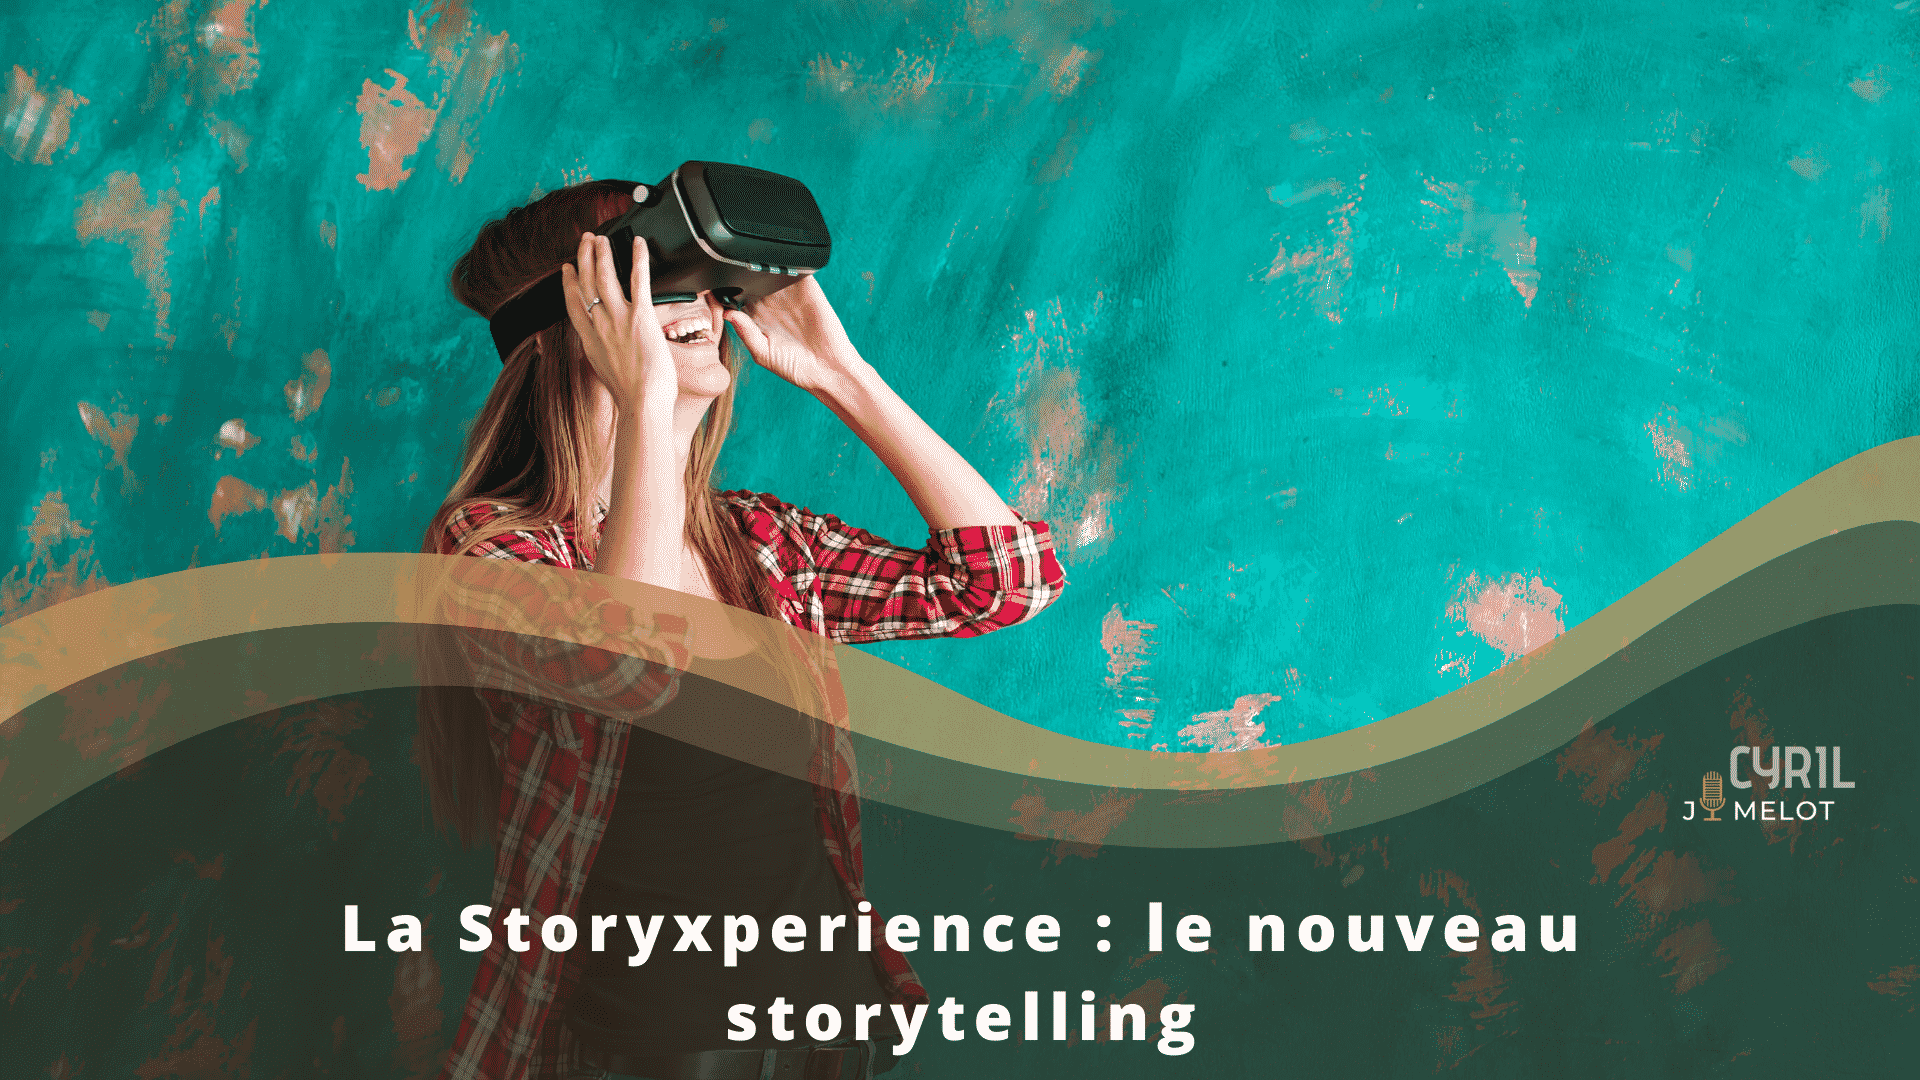 La Storyxperience : le nouveau storytelling